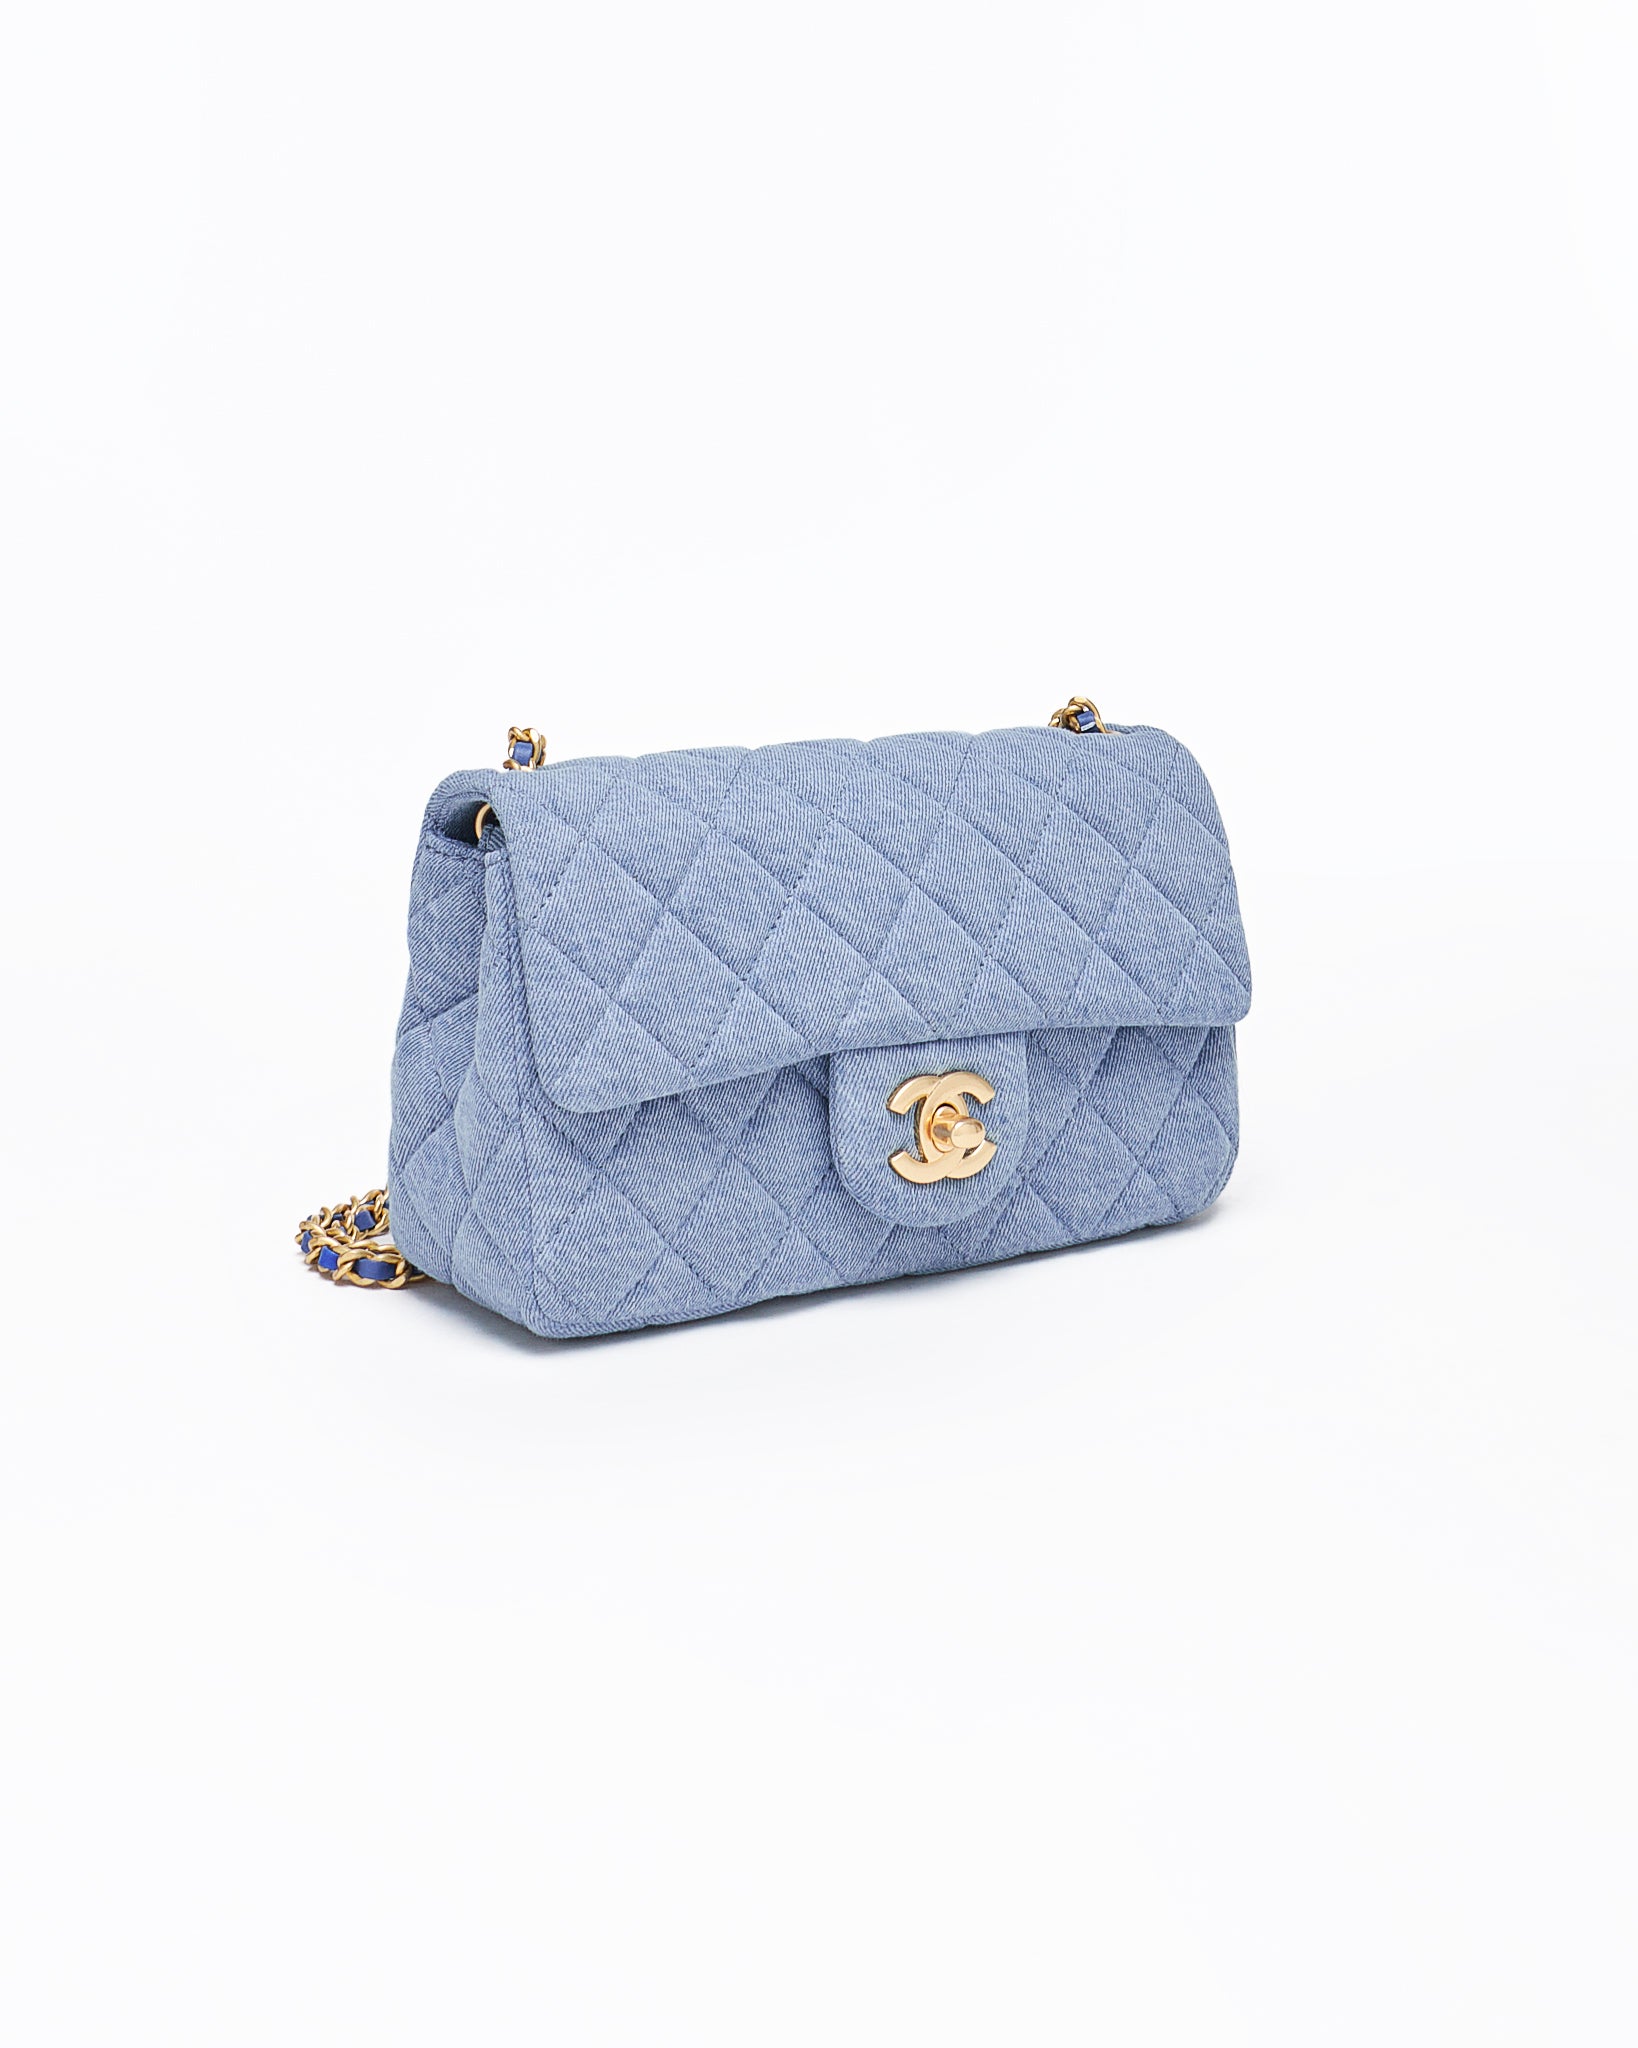 CHA Small Classic Flap Lady Blue Bag 229